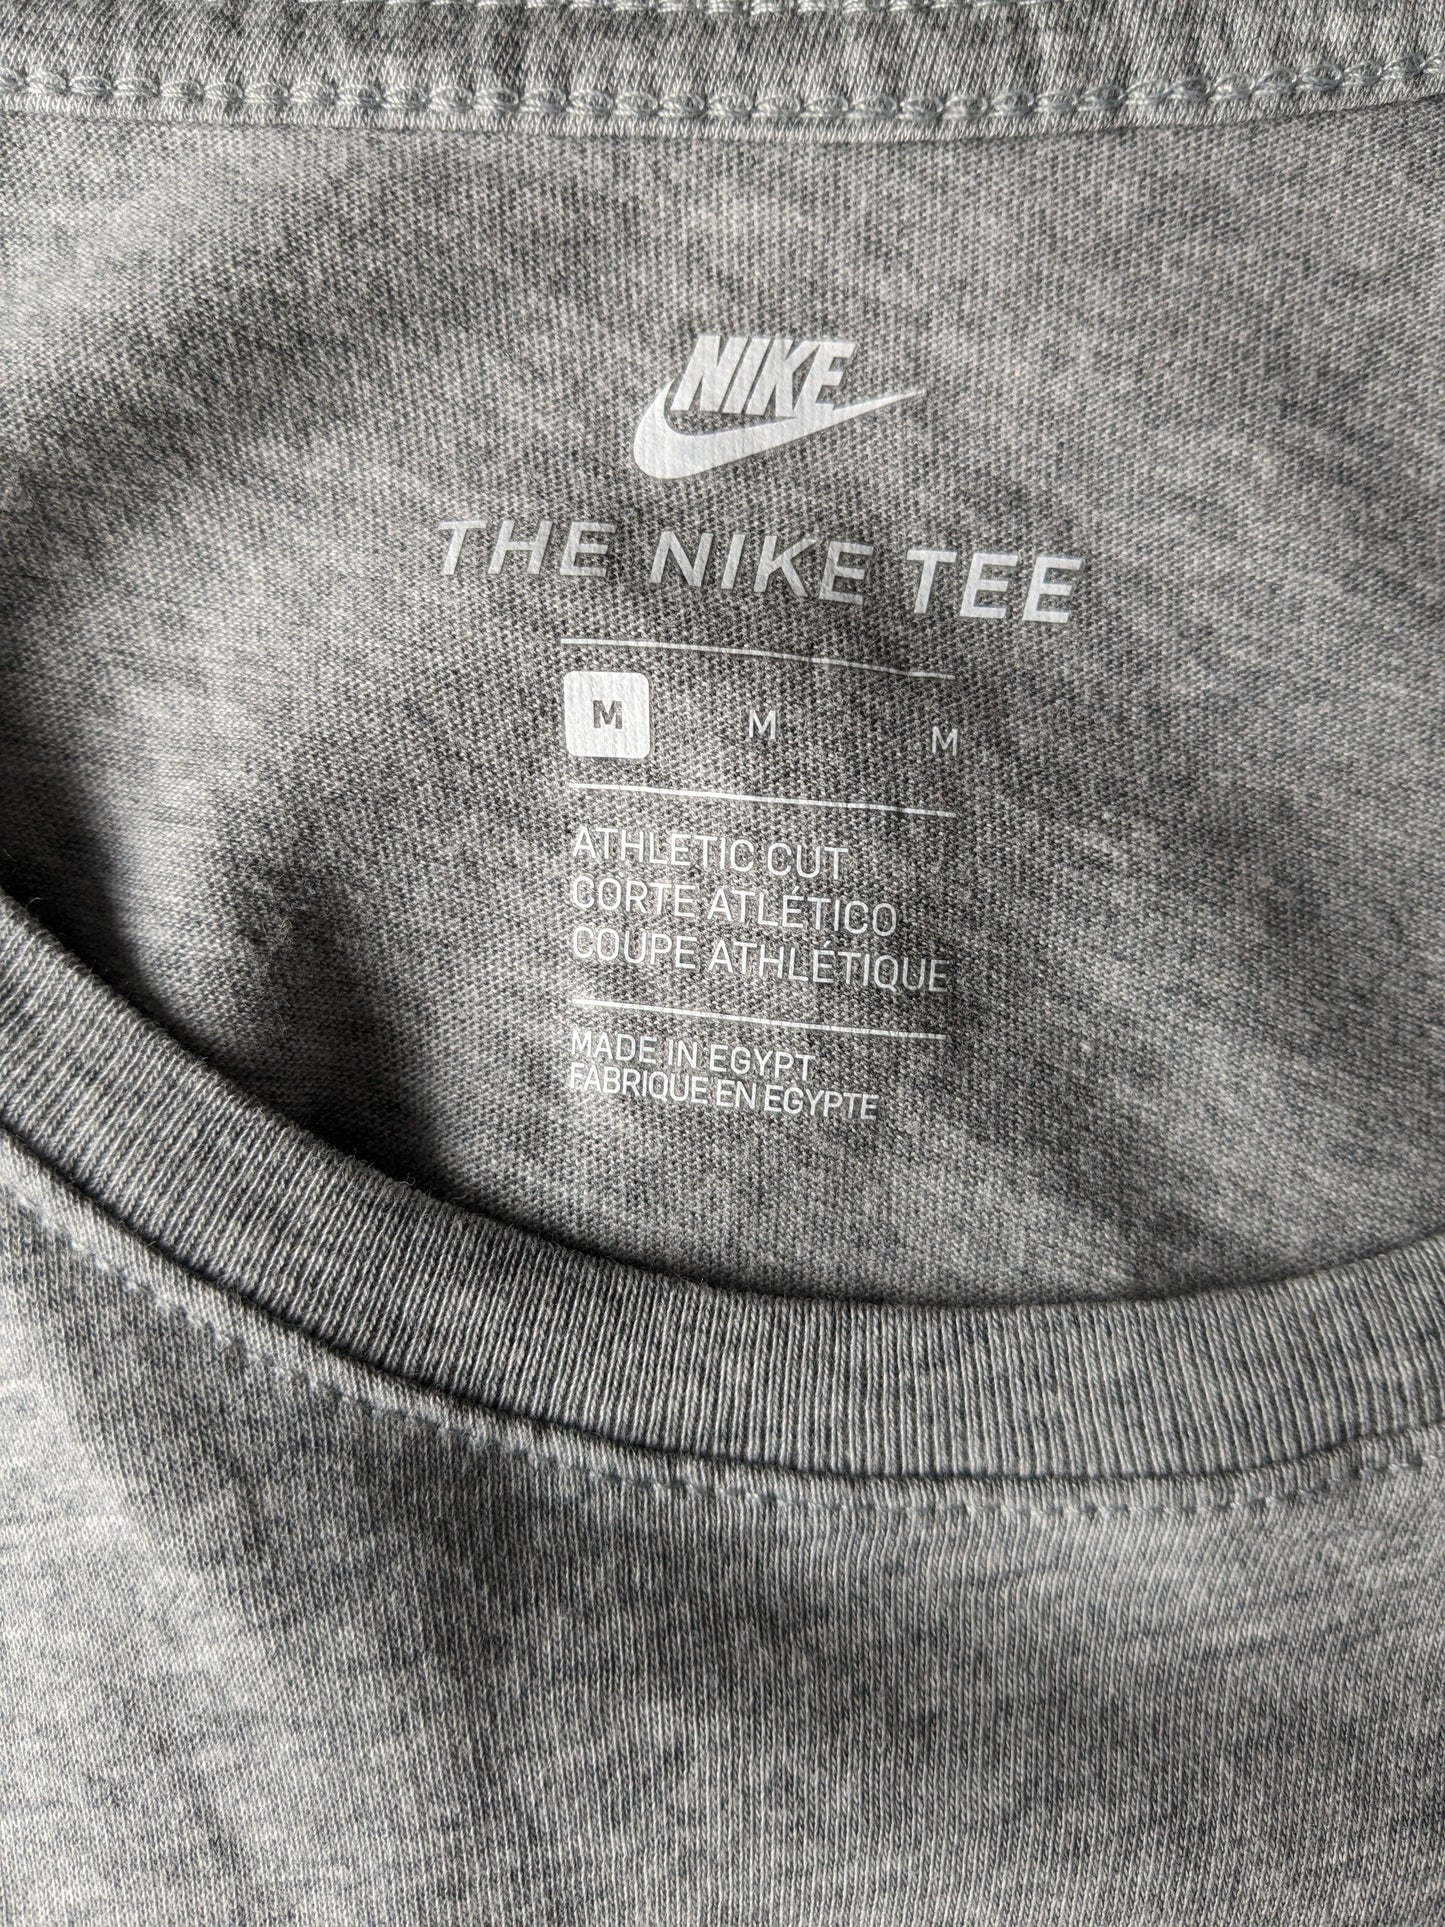 Nike "The Nike Tee" shirt. Grijs met opdruk. Maat M.